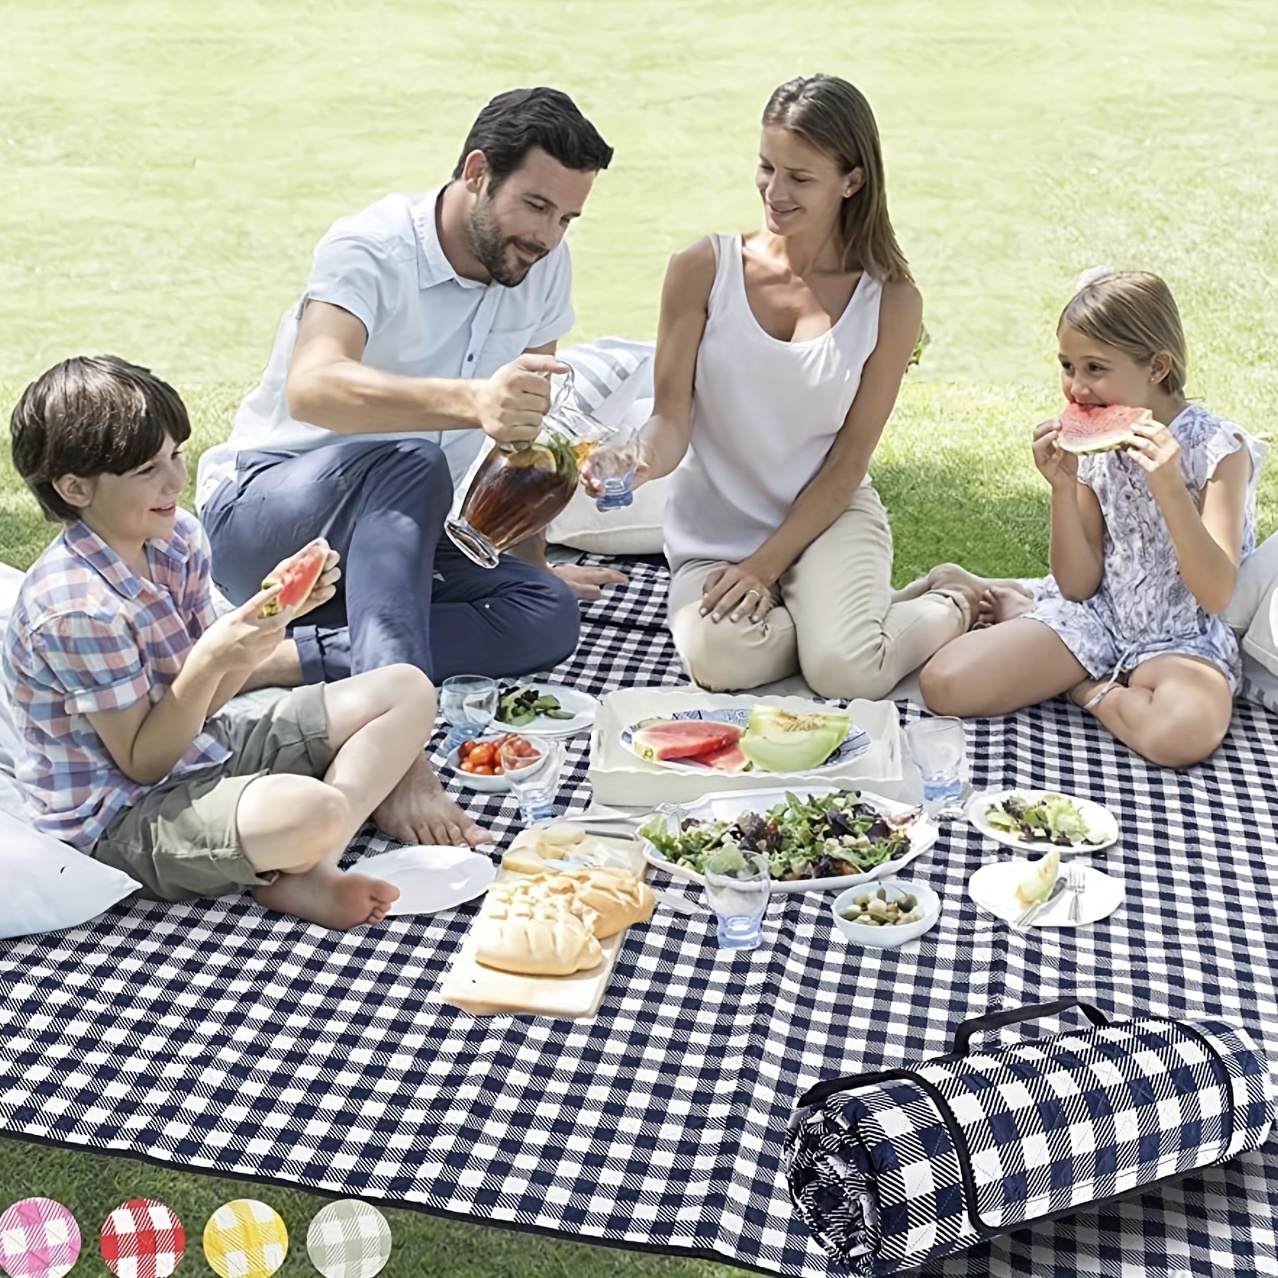 Decken Picknick - Kostenlose Rückgabe Innerhalb Von 90 Tagen